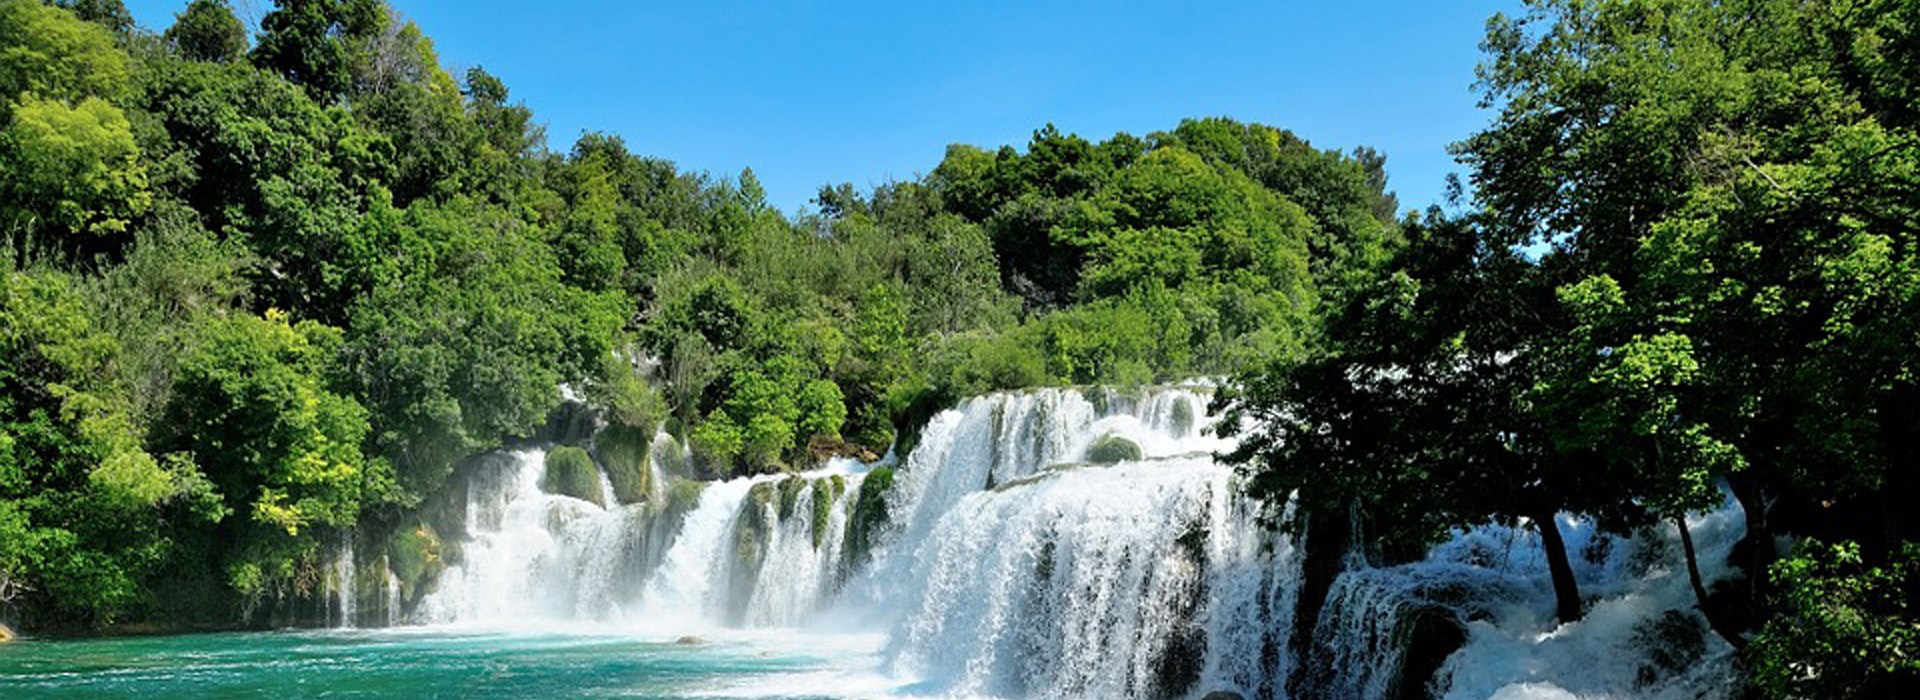 Visiter Le parc national de Krka - Croatie